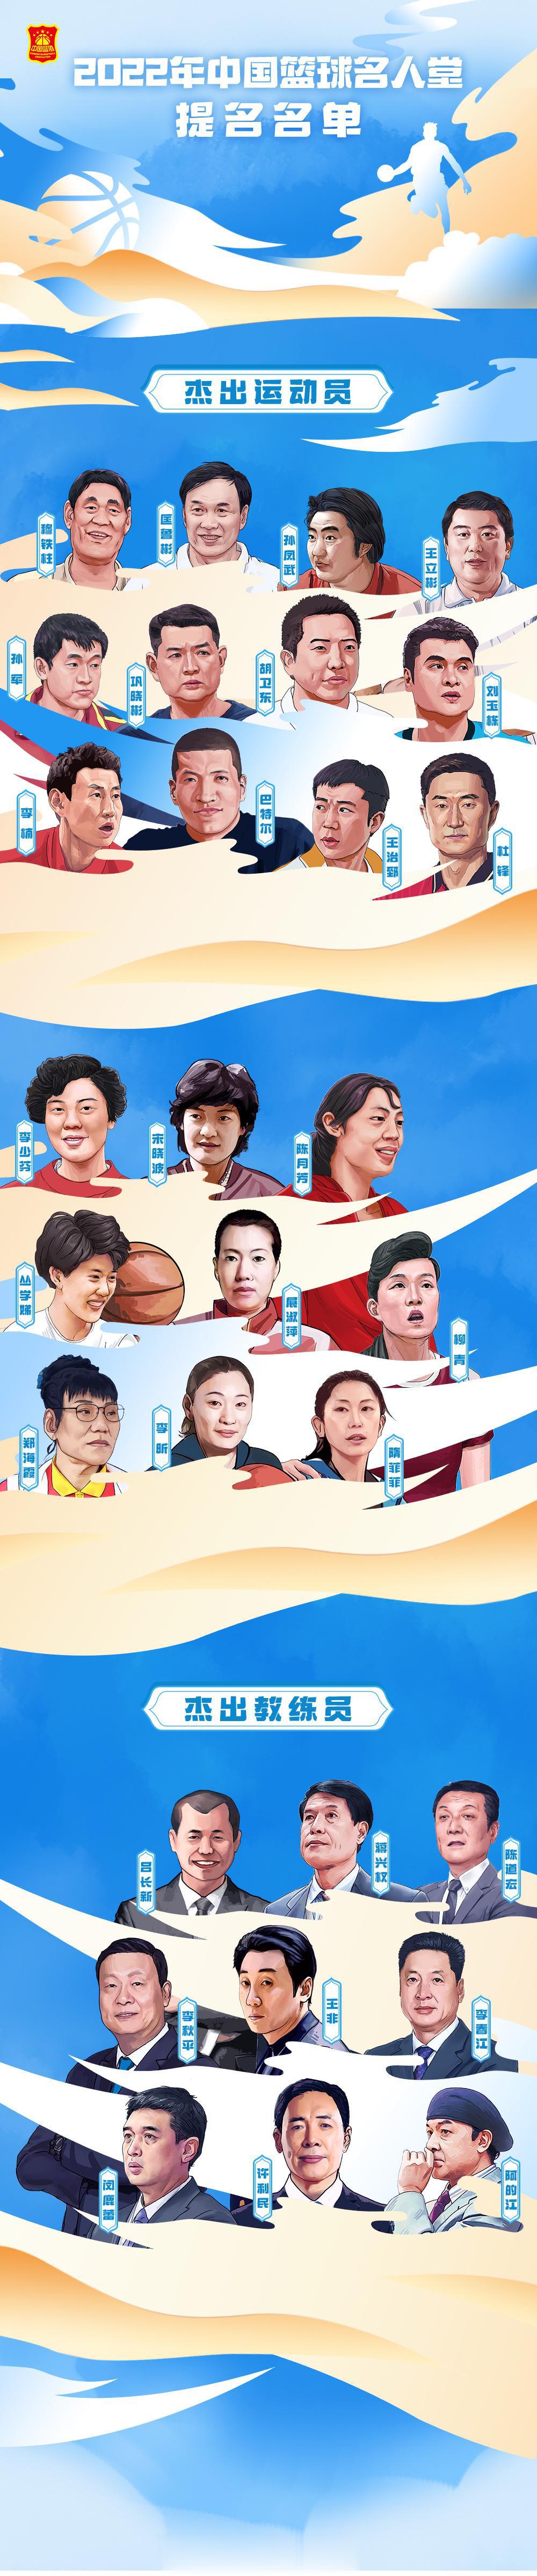  在此前公布的中国篮球名人堂30人提名名单中，李楠、李春江均在列。他俩分别出现在(1)